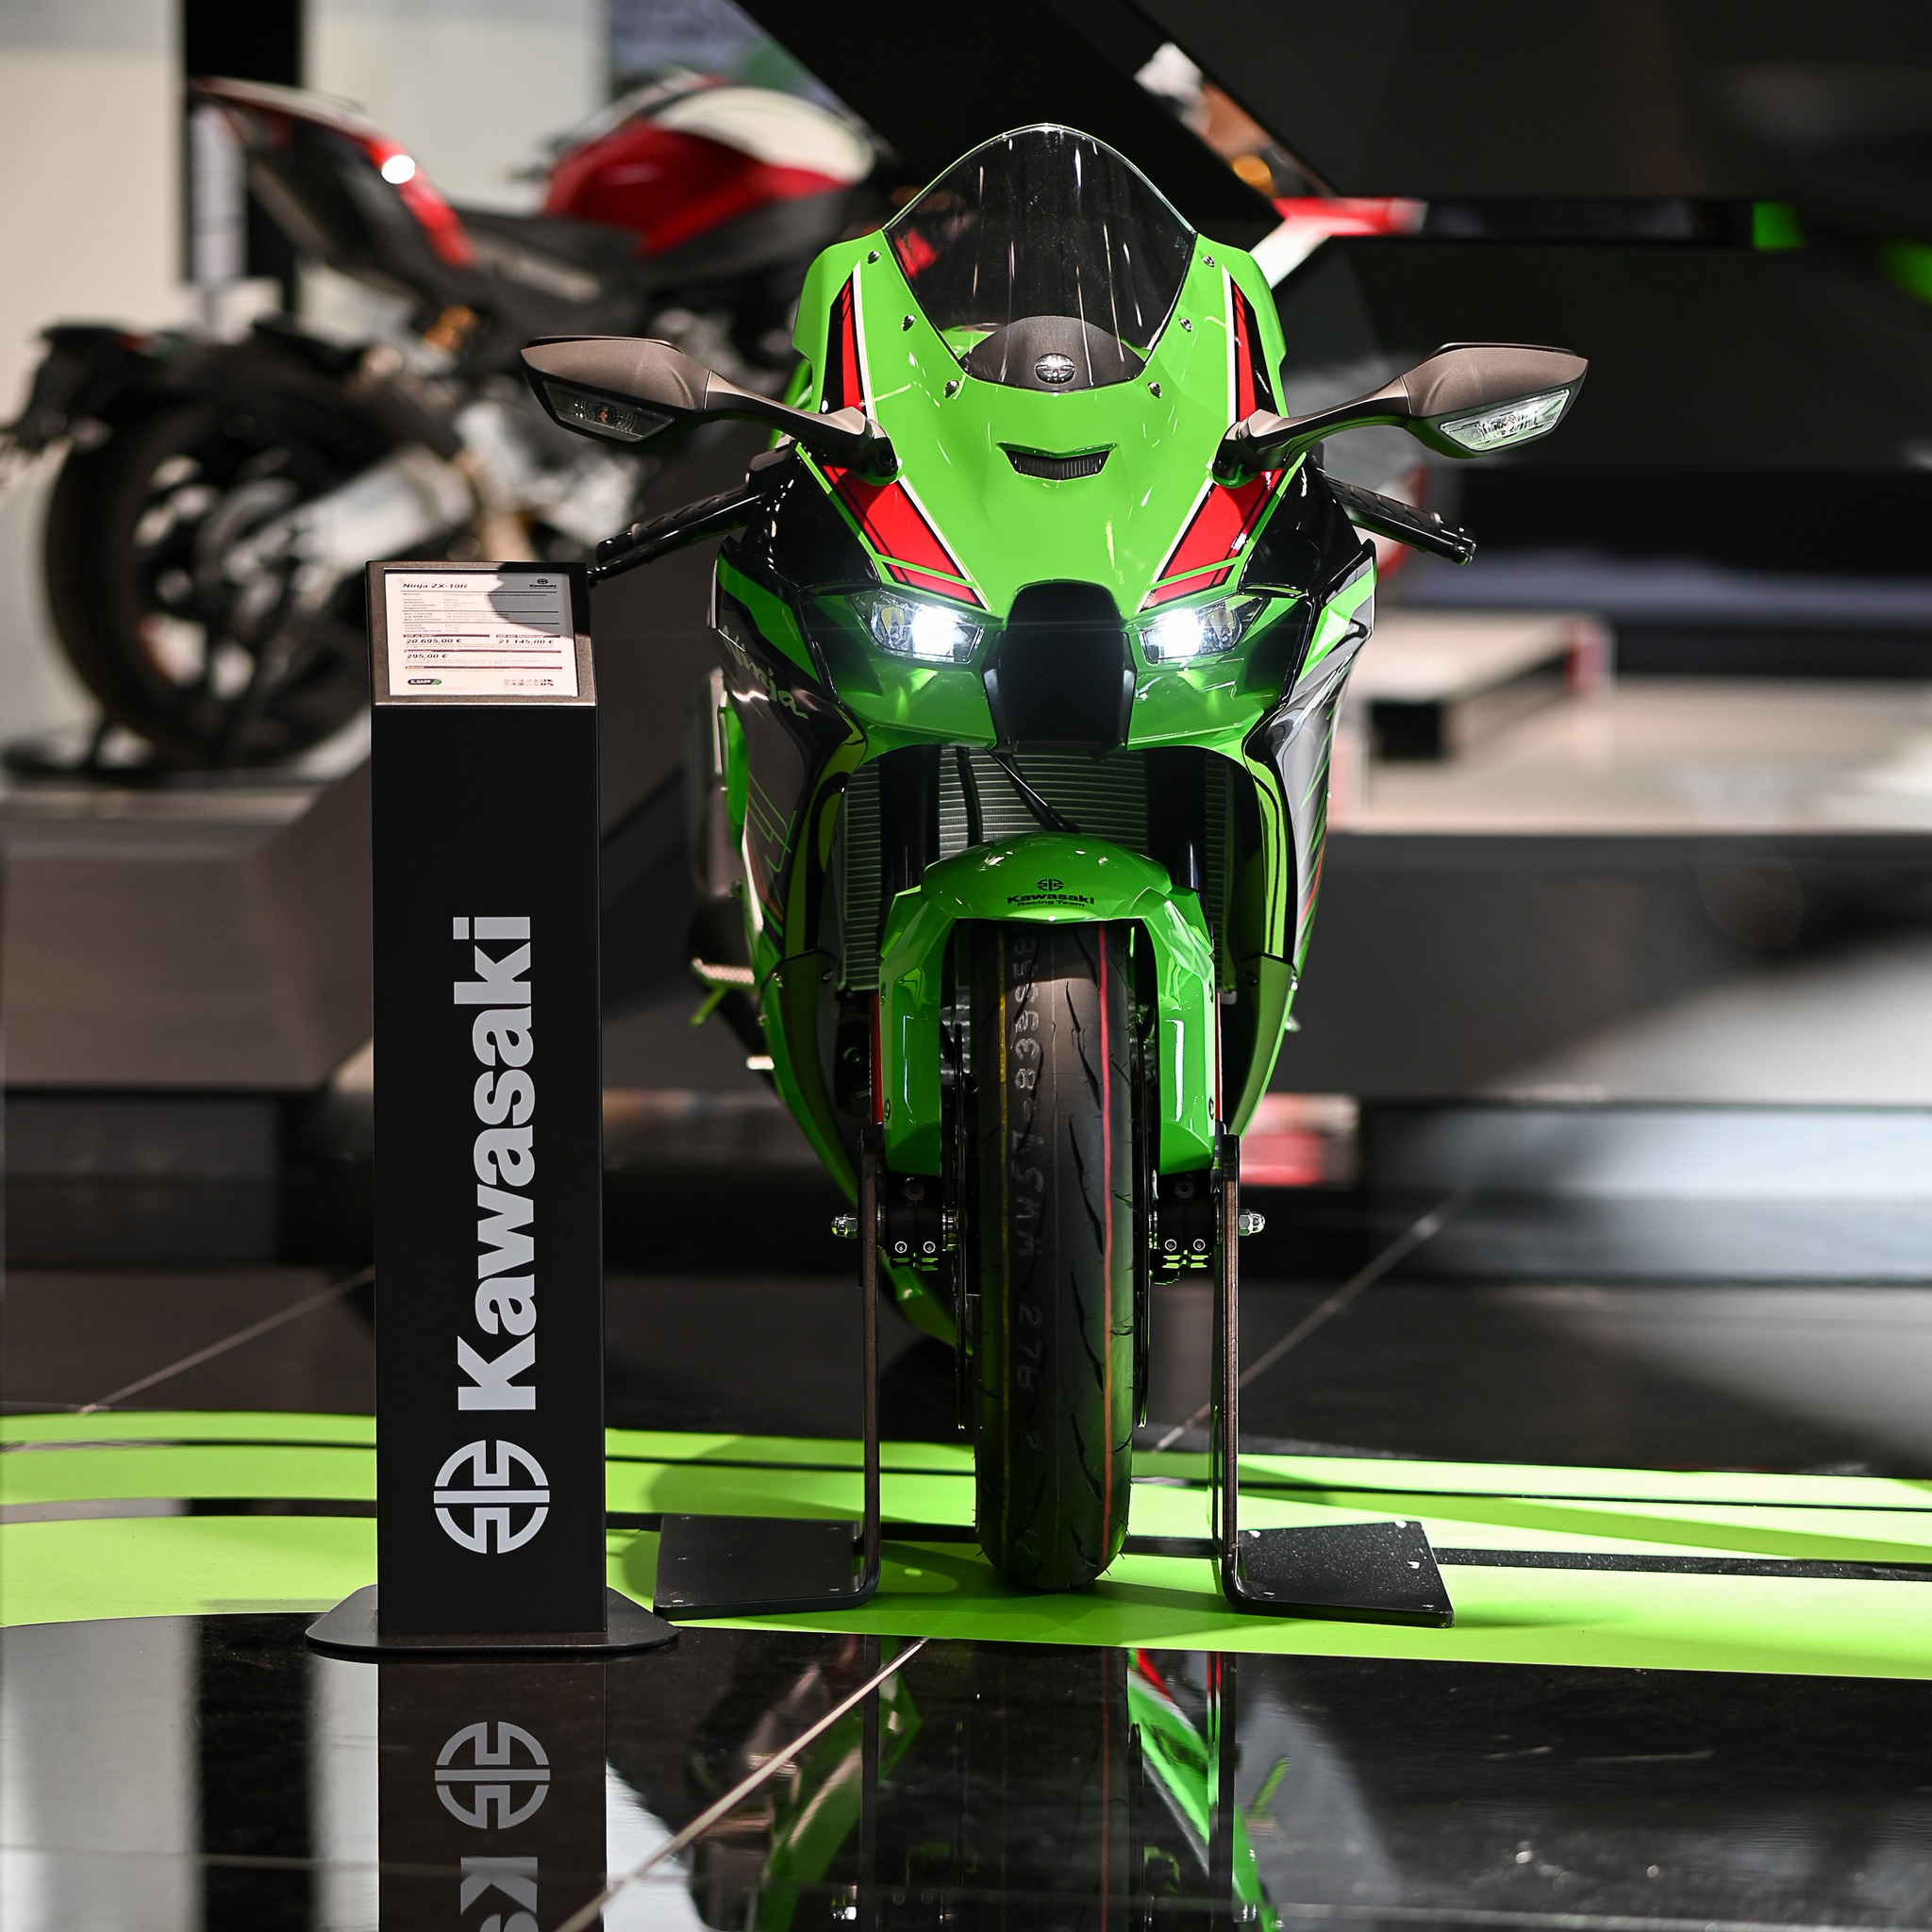 Finansuj Kawasaki - sprawdź przykładową ratę nowego motocykla Kawasaki